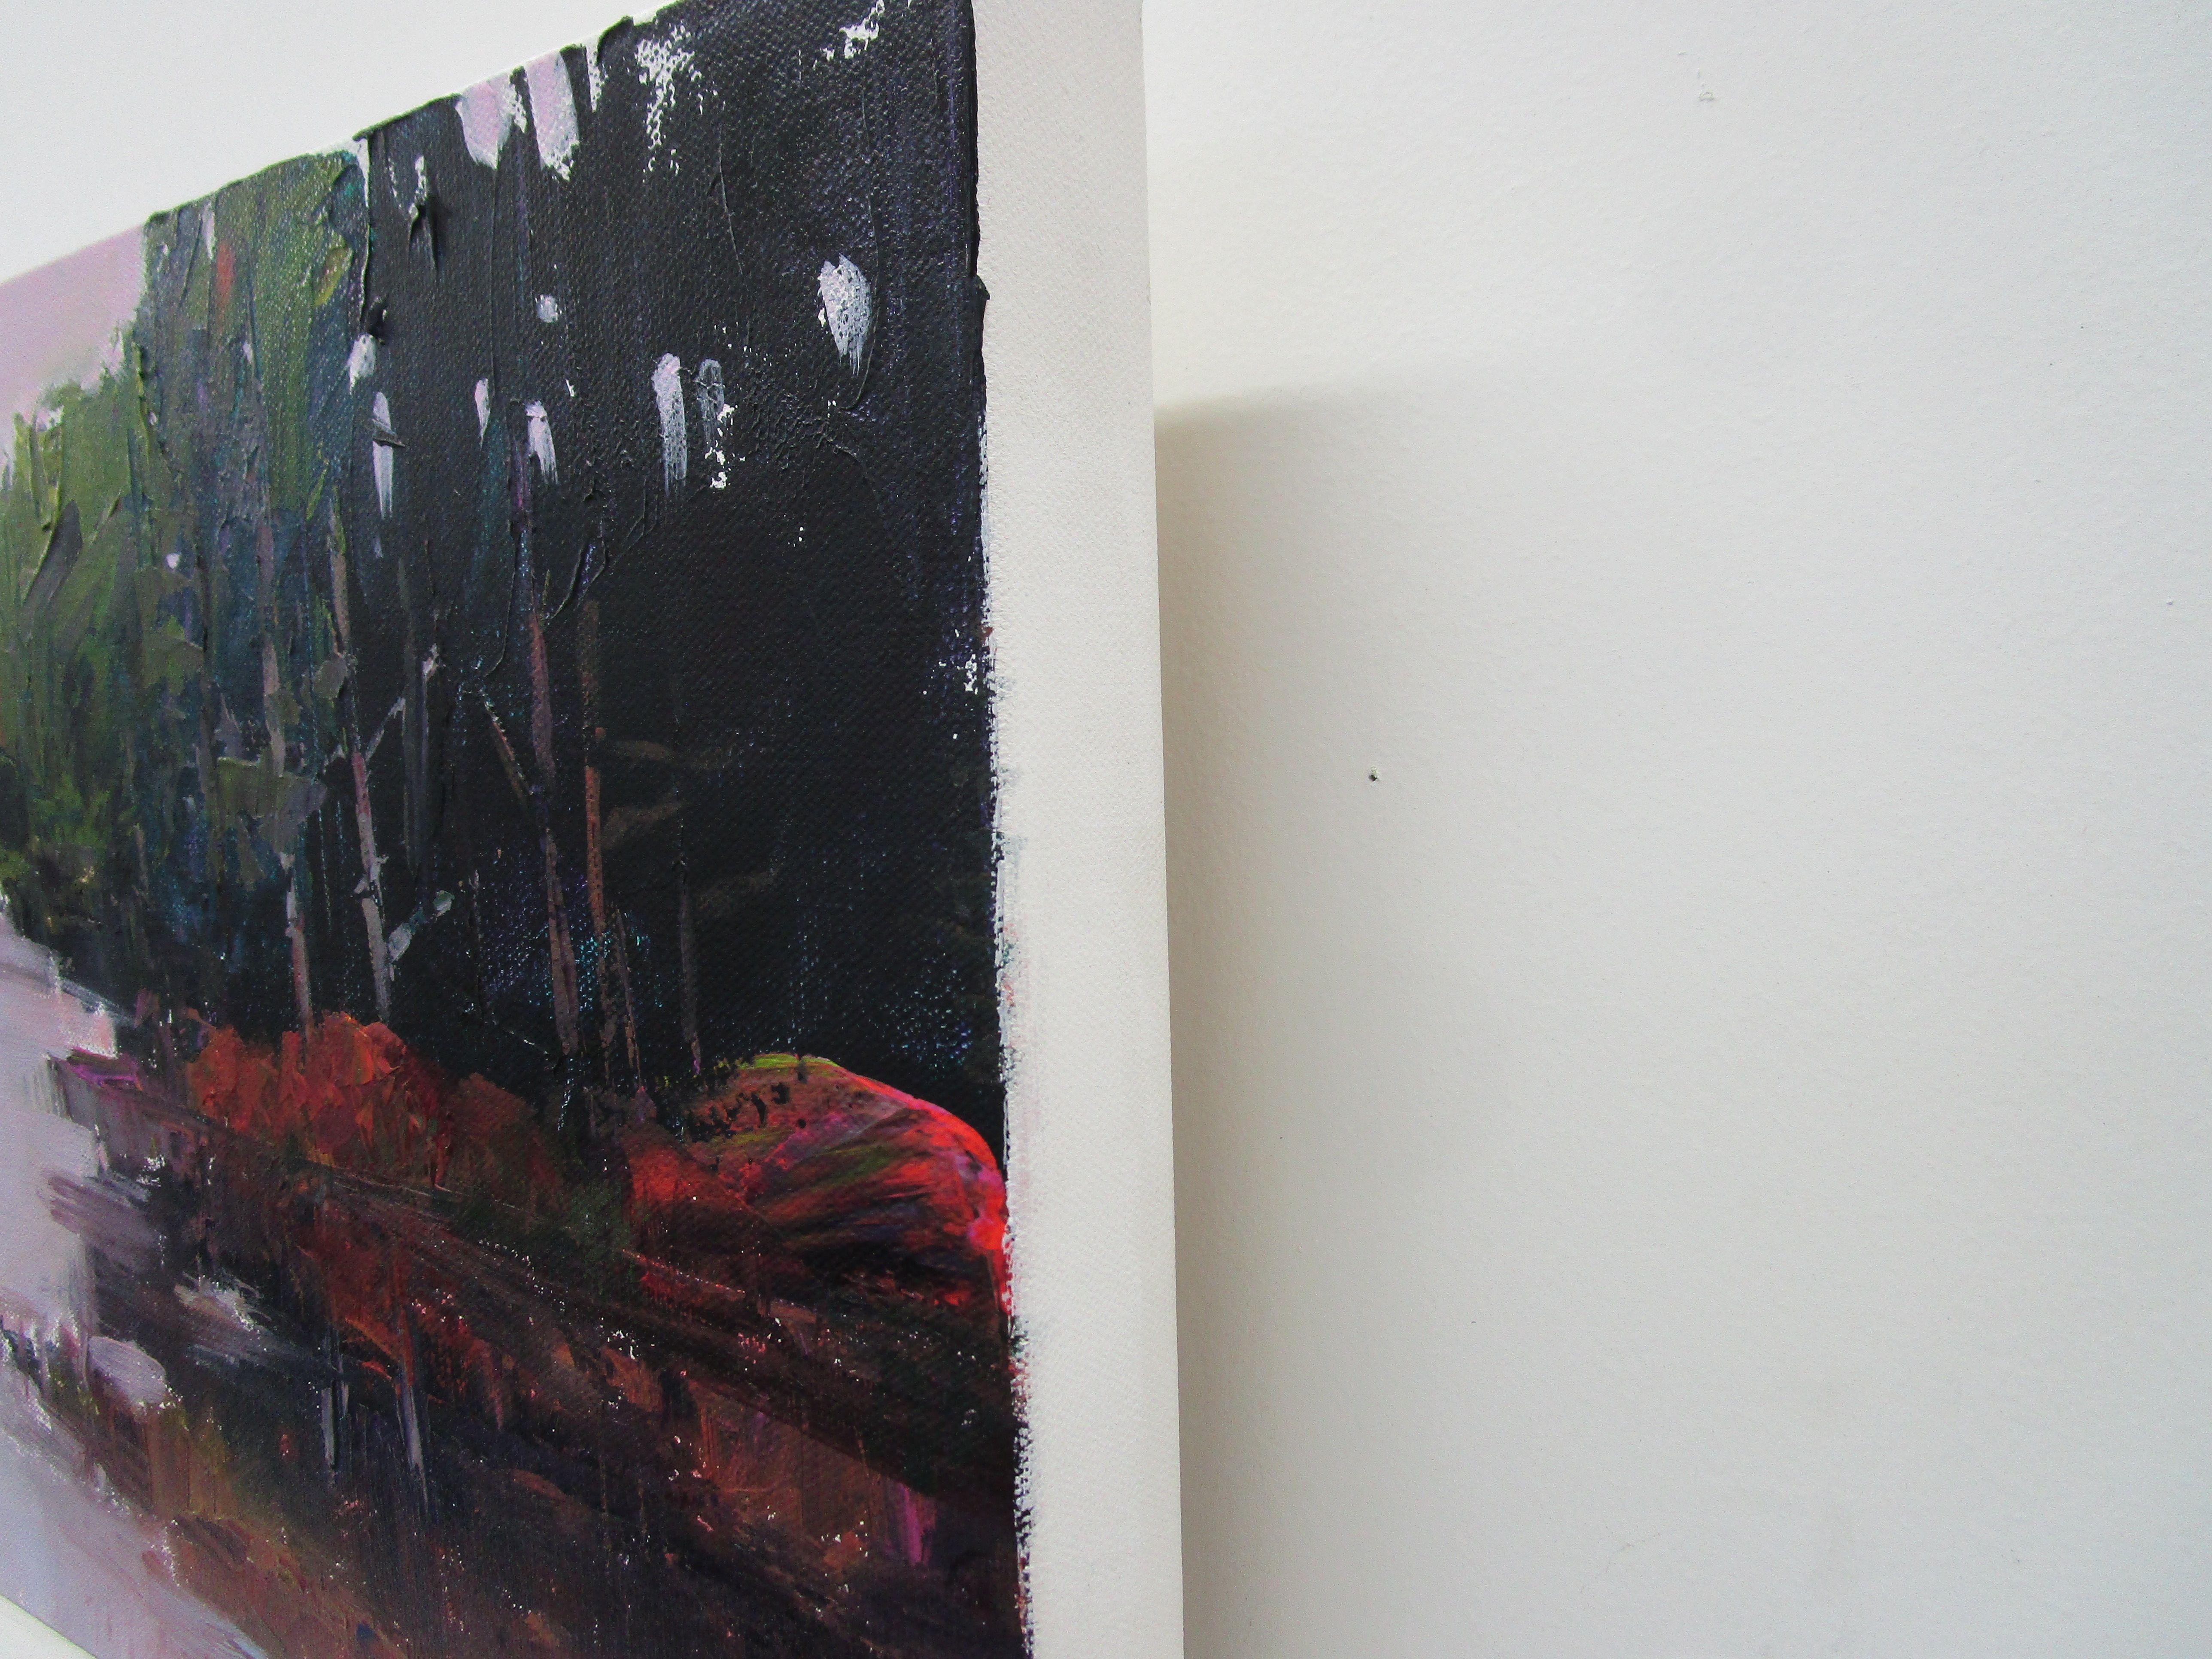 Sumpfige Bucht, ein See im Harriman State Park, NY :: Gemälde :: Impressionist :: Dieses Werk wird mit einem offiziellen, vom Künstler unterzeichneten Echtheitszertifikat geliefert :: Bereit zum Aufhängen: Ja :: Signiert: Ja :: Ort der Signatur: